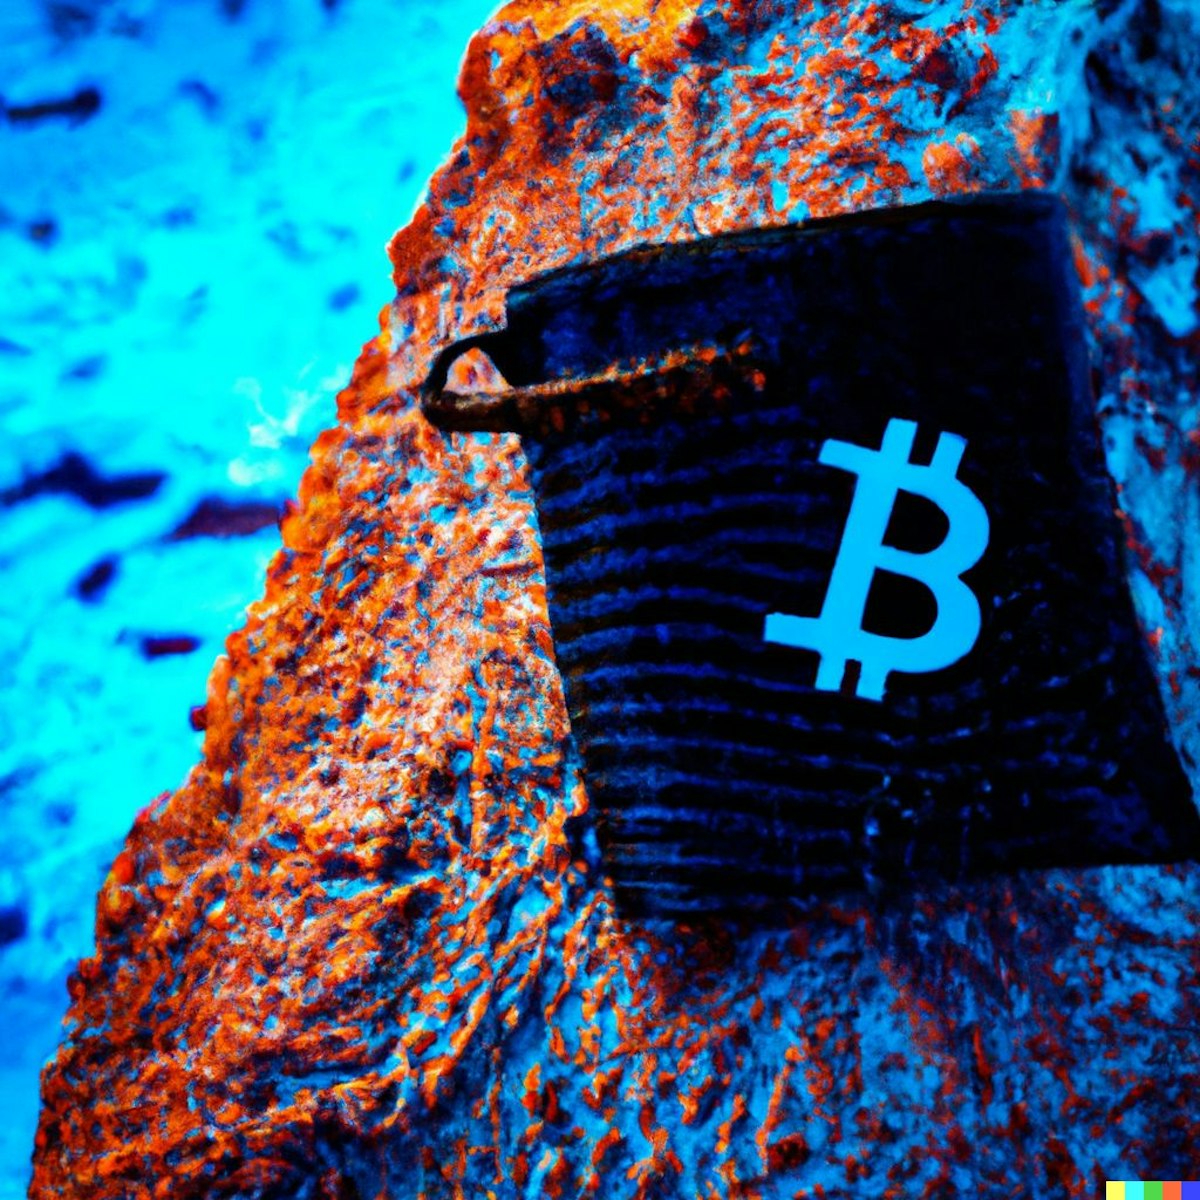 featured image - Kayıp Bitcoin: Bölüm 1 - ChatGPT ile Birlikte Yazdığım Hikaye